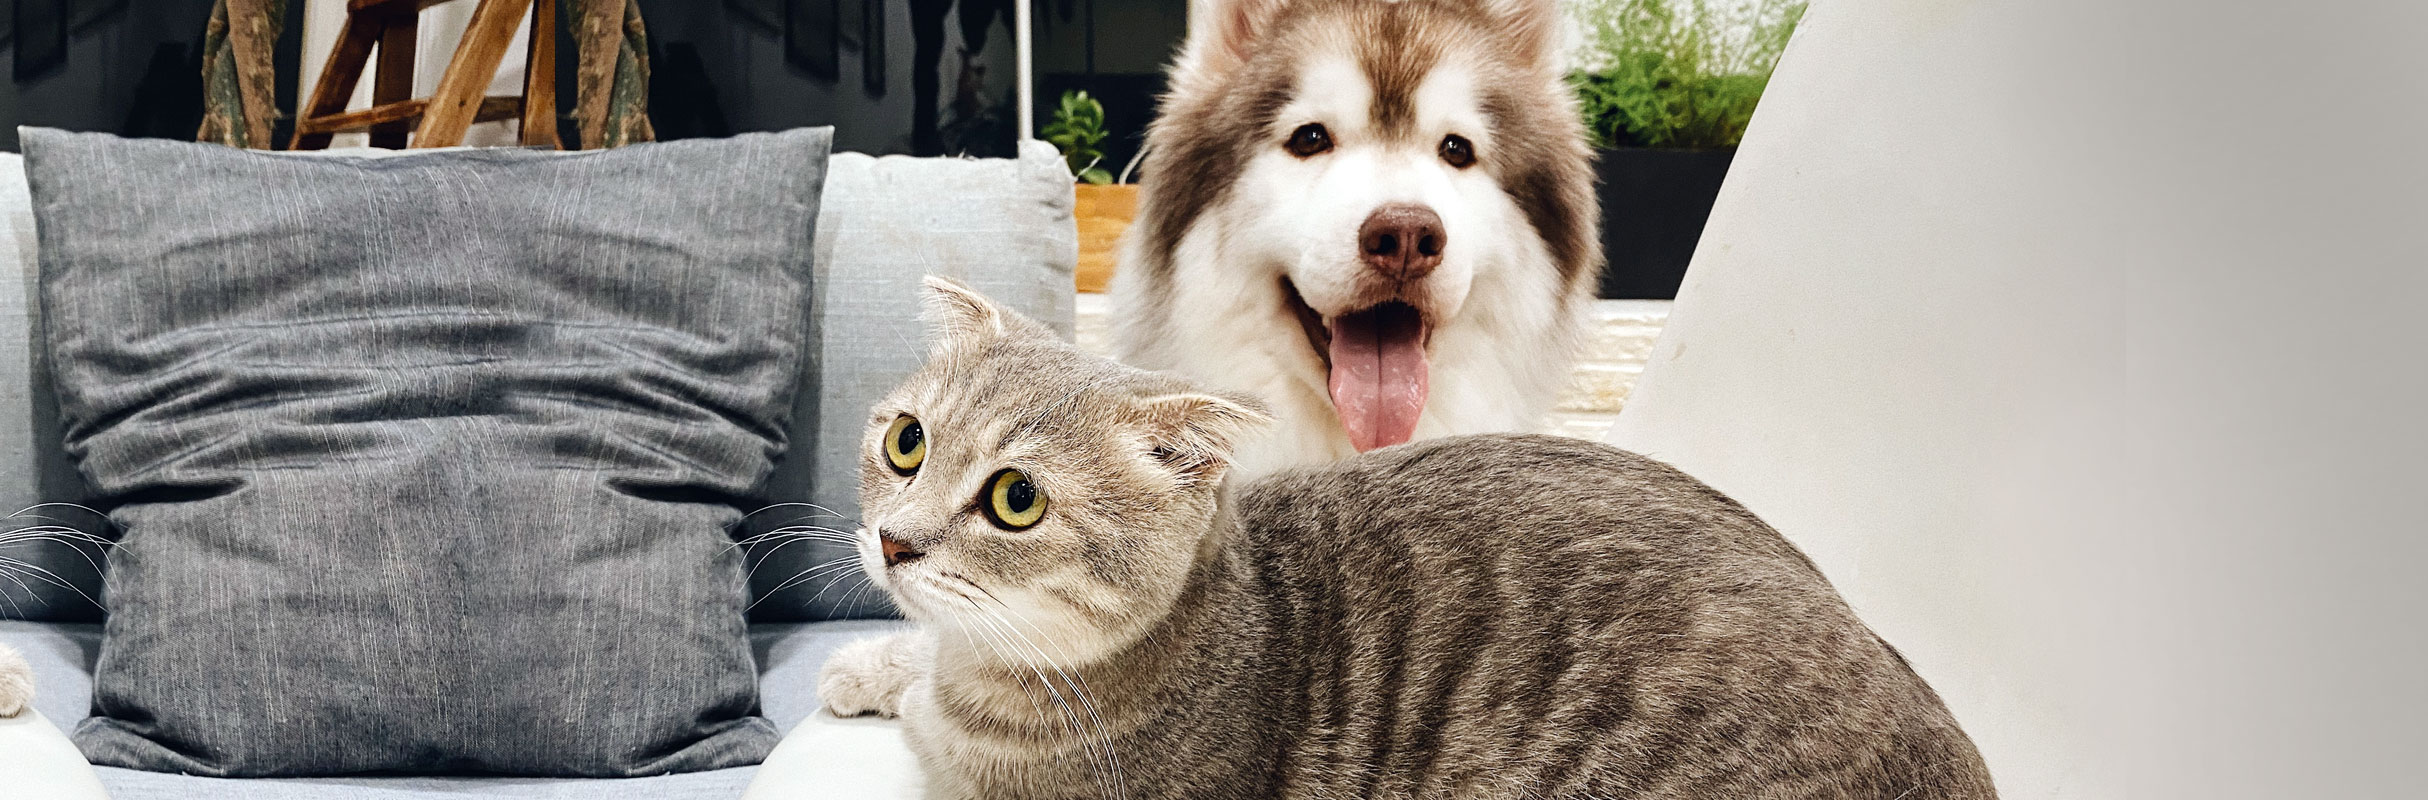 Consejos para una buena convivencia entre gatos y perros